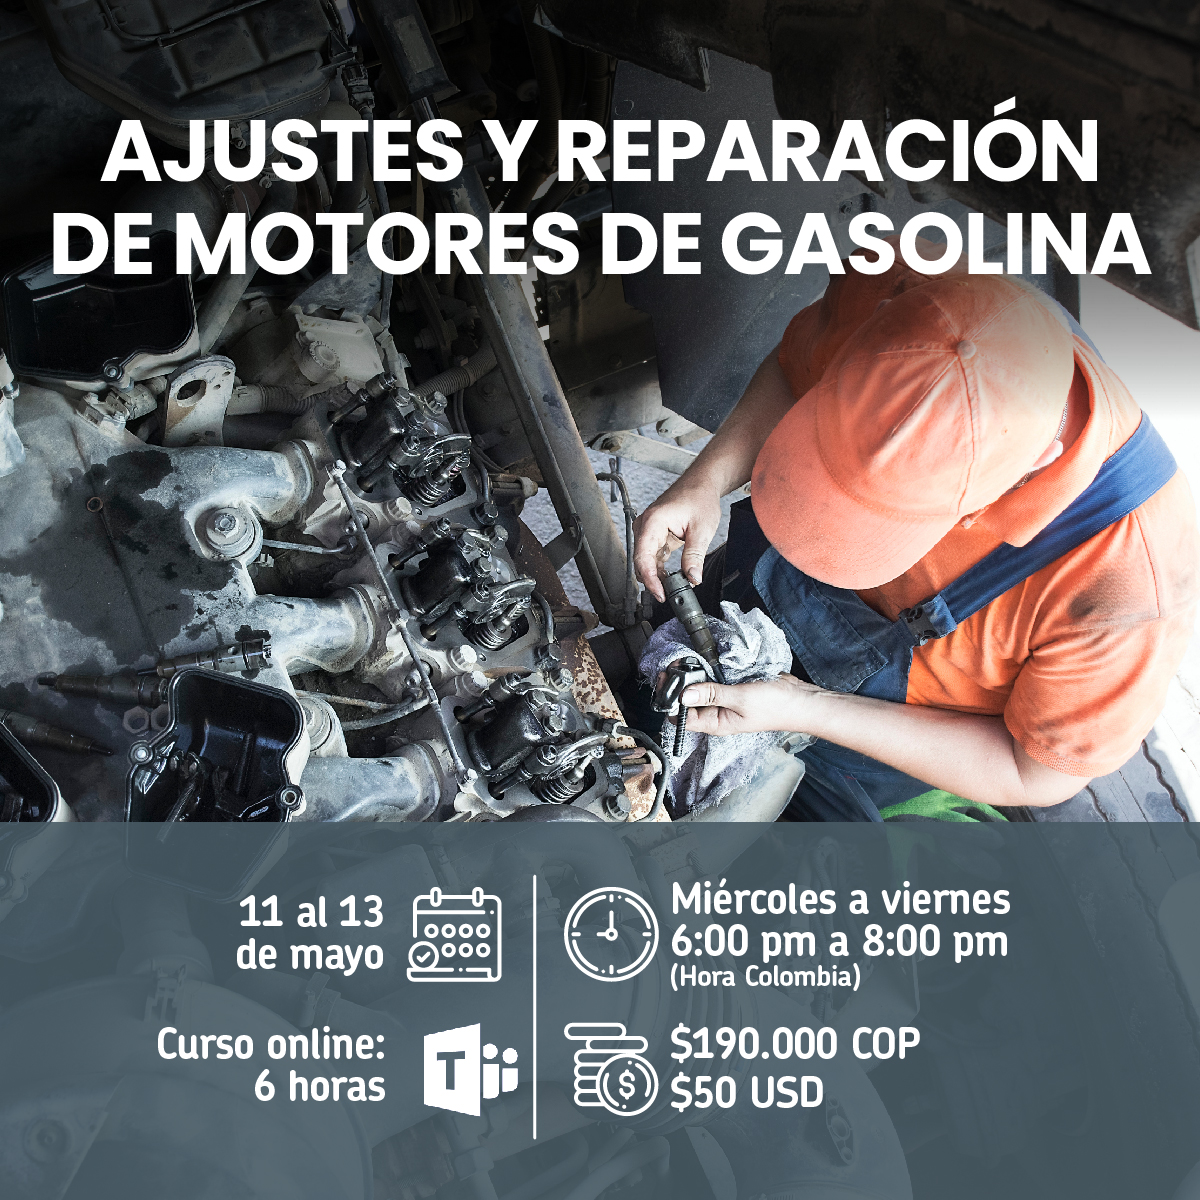 Ajustes y reparación de motores a gasolina